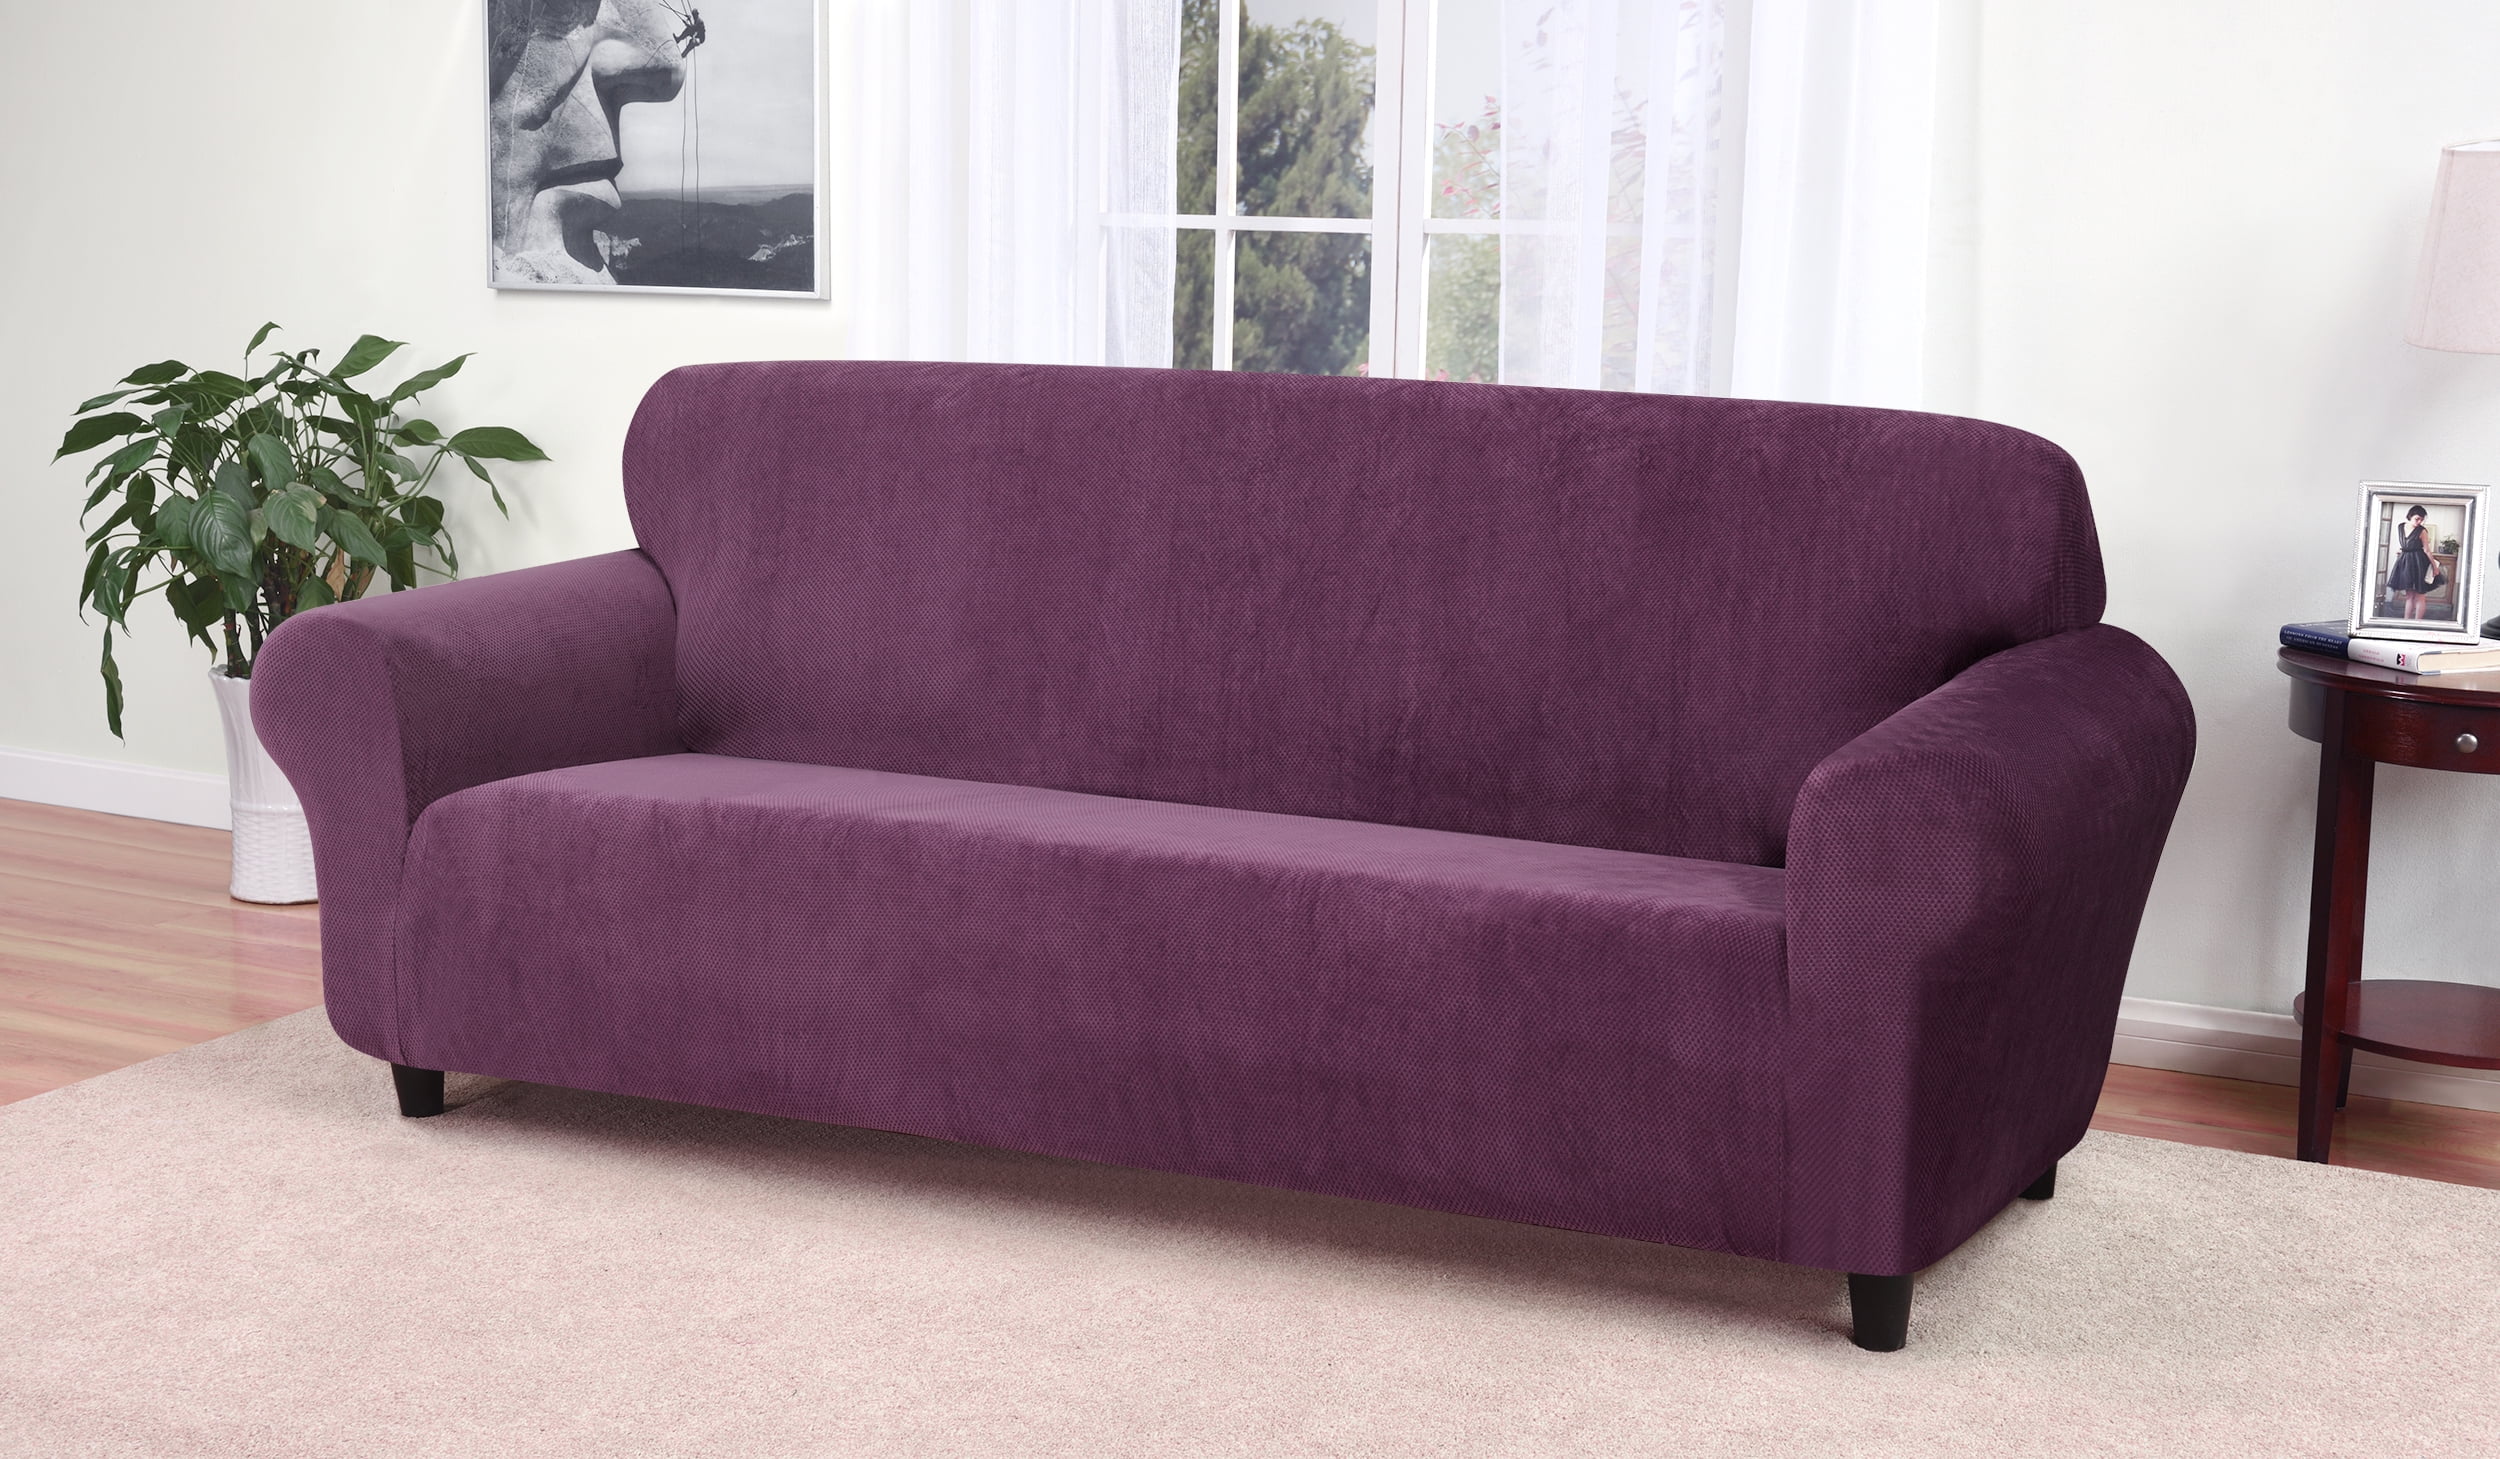 kathy ireland leather sofa set